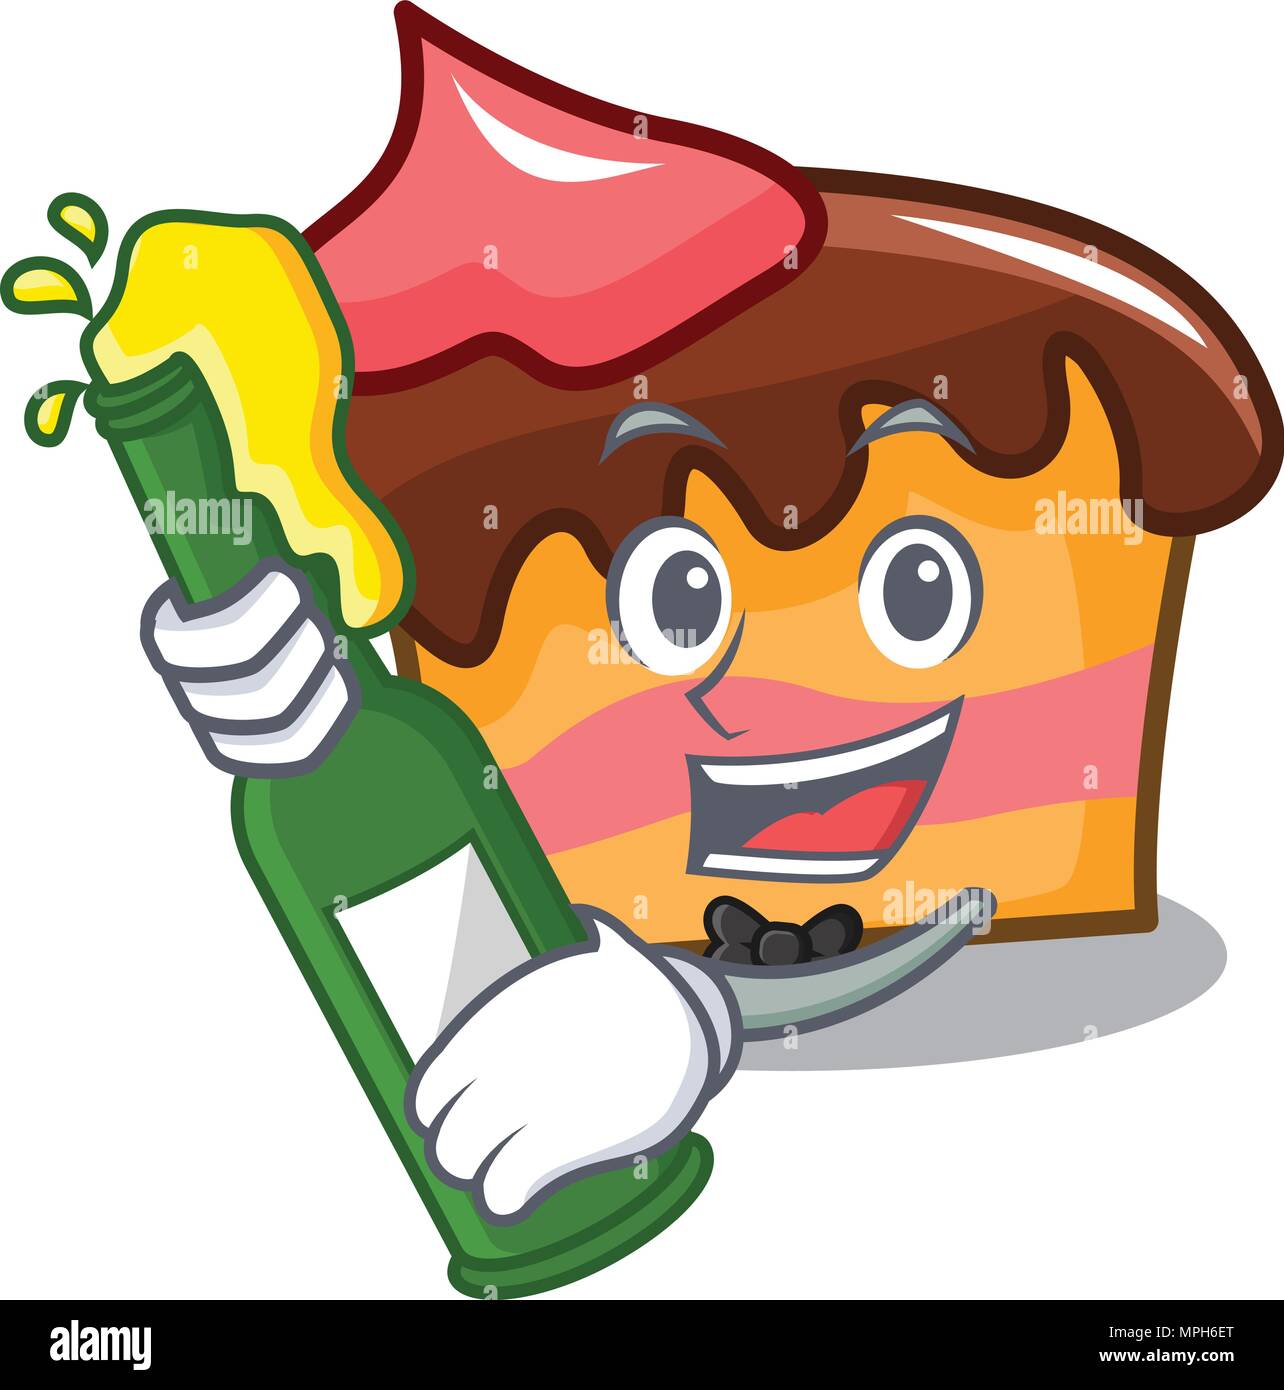 A La Biere Gateau Mousseline Mascot Cartoon Image Vectorielle Stock Alamy